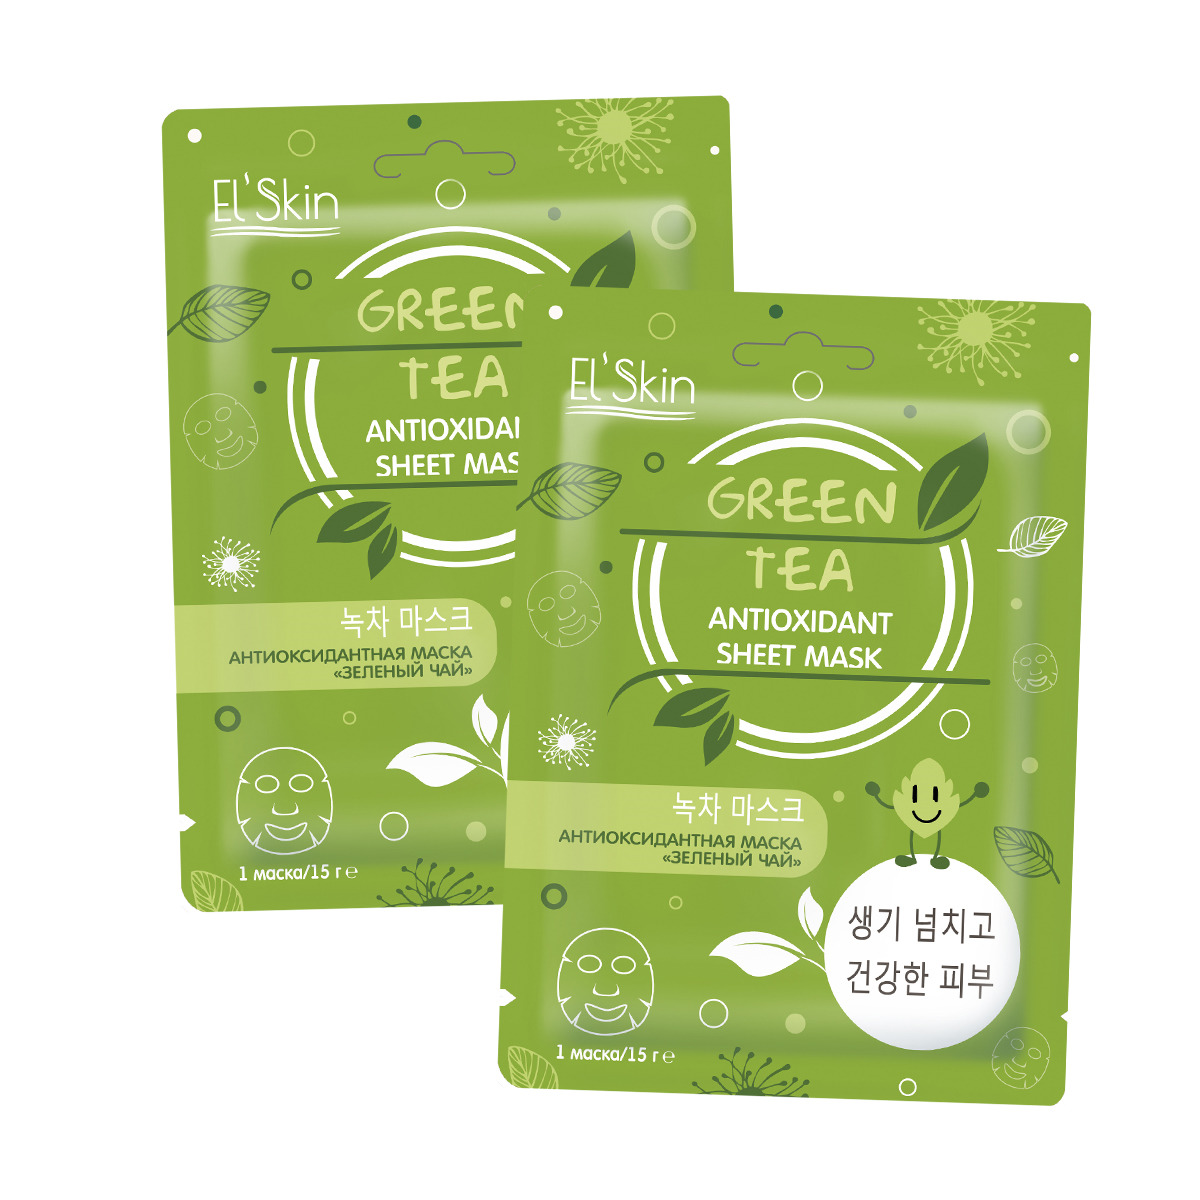 Тканевые маски защищают. El' Skin es-902 антиоксидантная маска "зеленый чай". Маска el Skin зеленый чай antioxidant. El' Skin антиоксидантная маска "зеленый чай". El Skin тканевая маска пептидная зелёный чай.